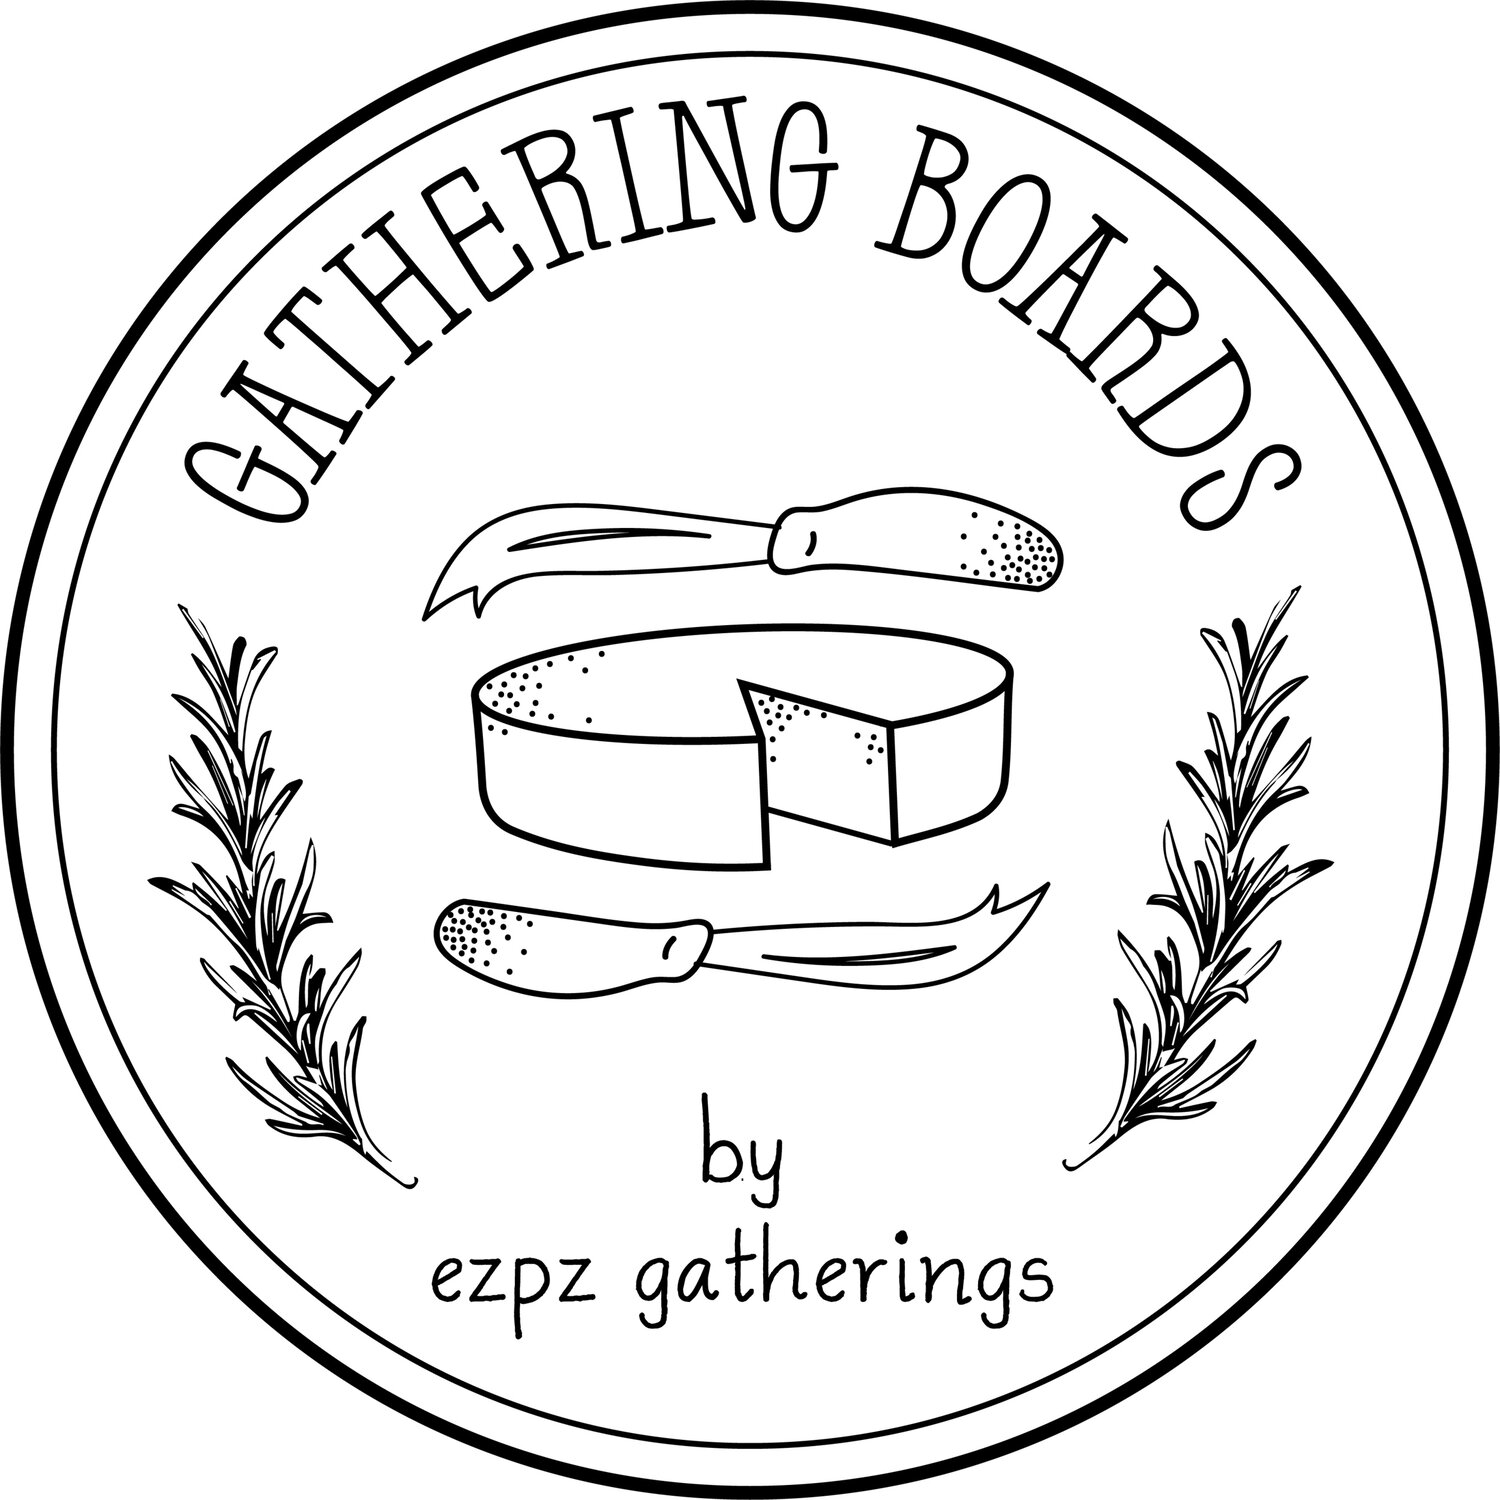 Gathering Boards by ezpz gatherings